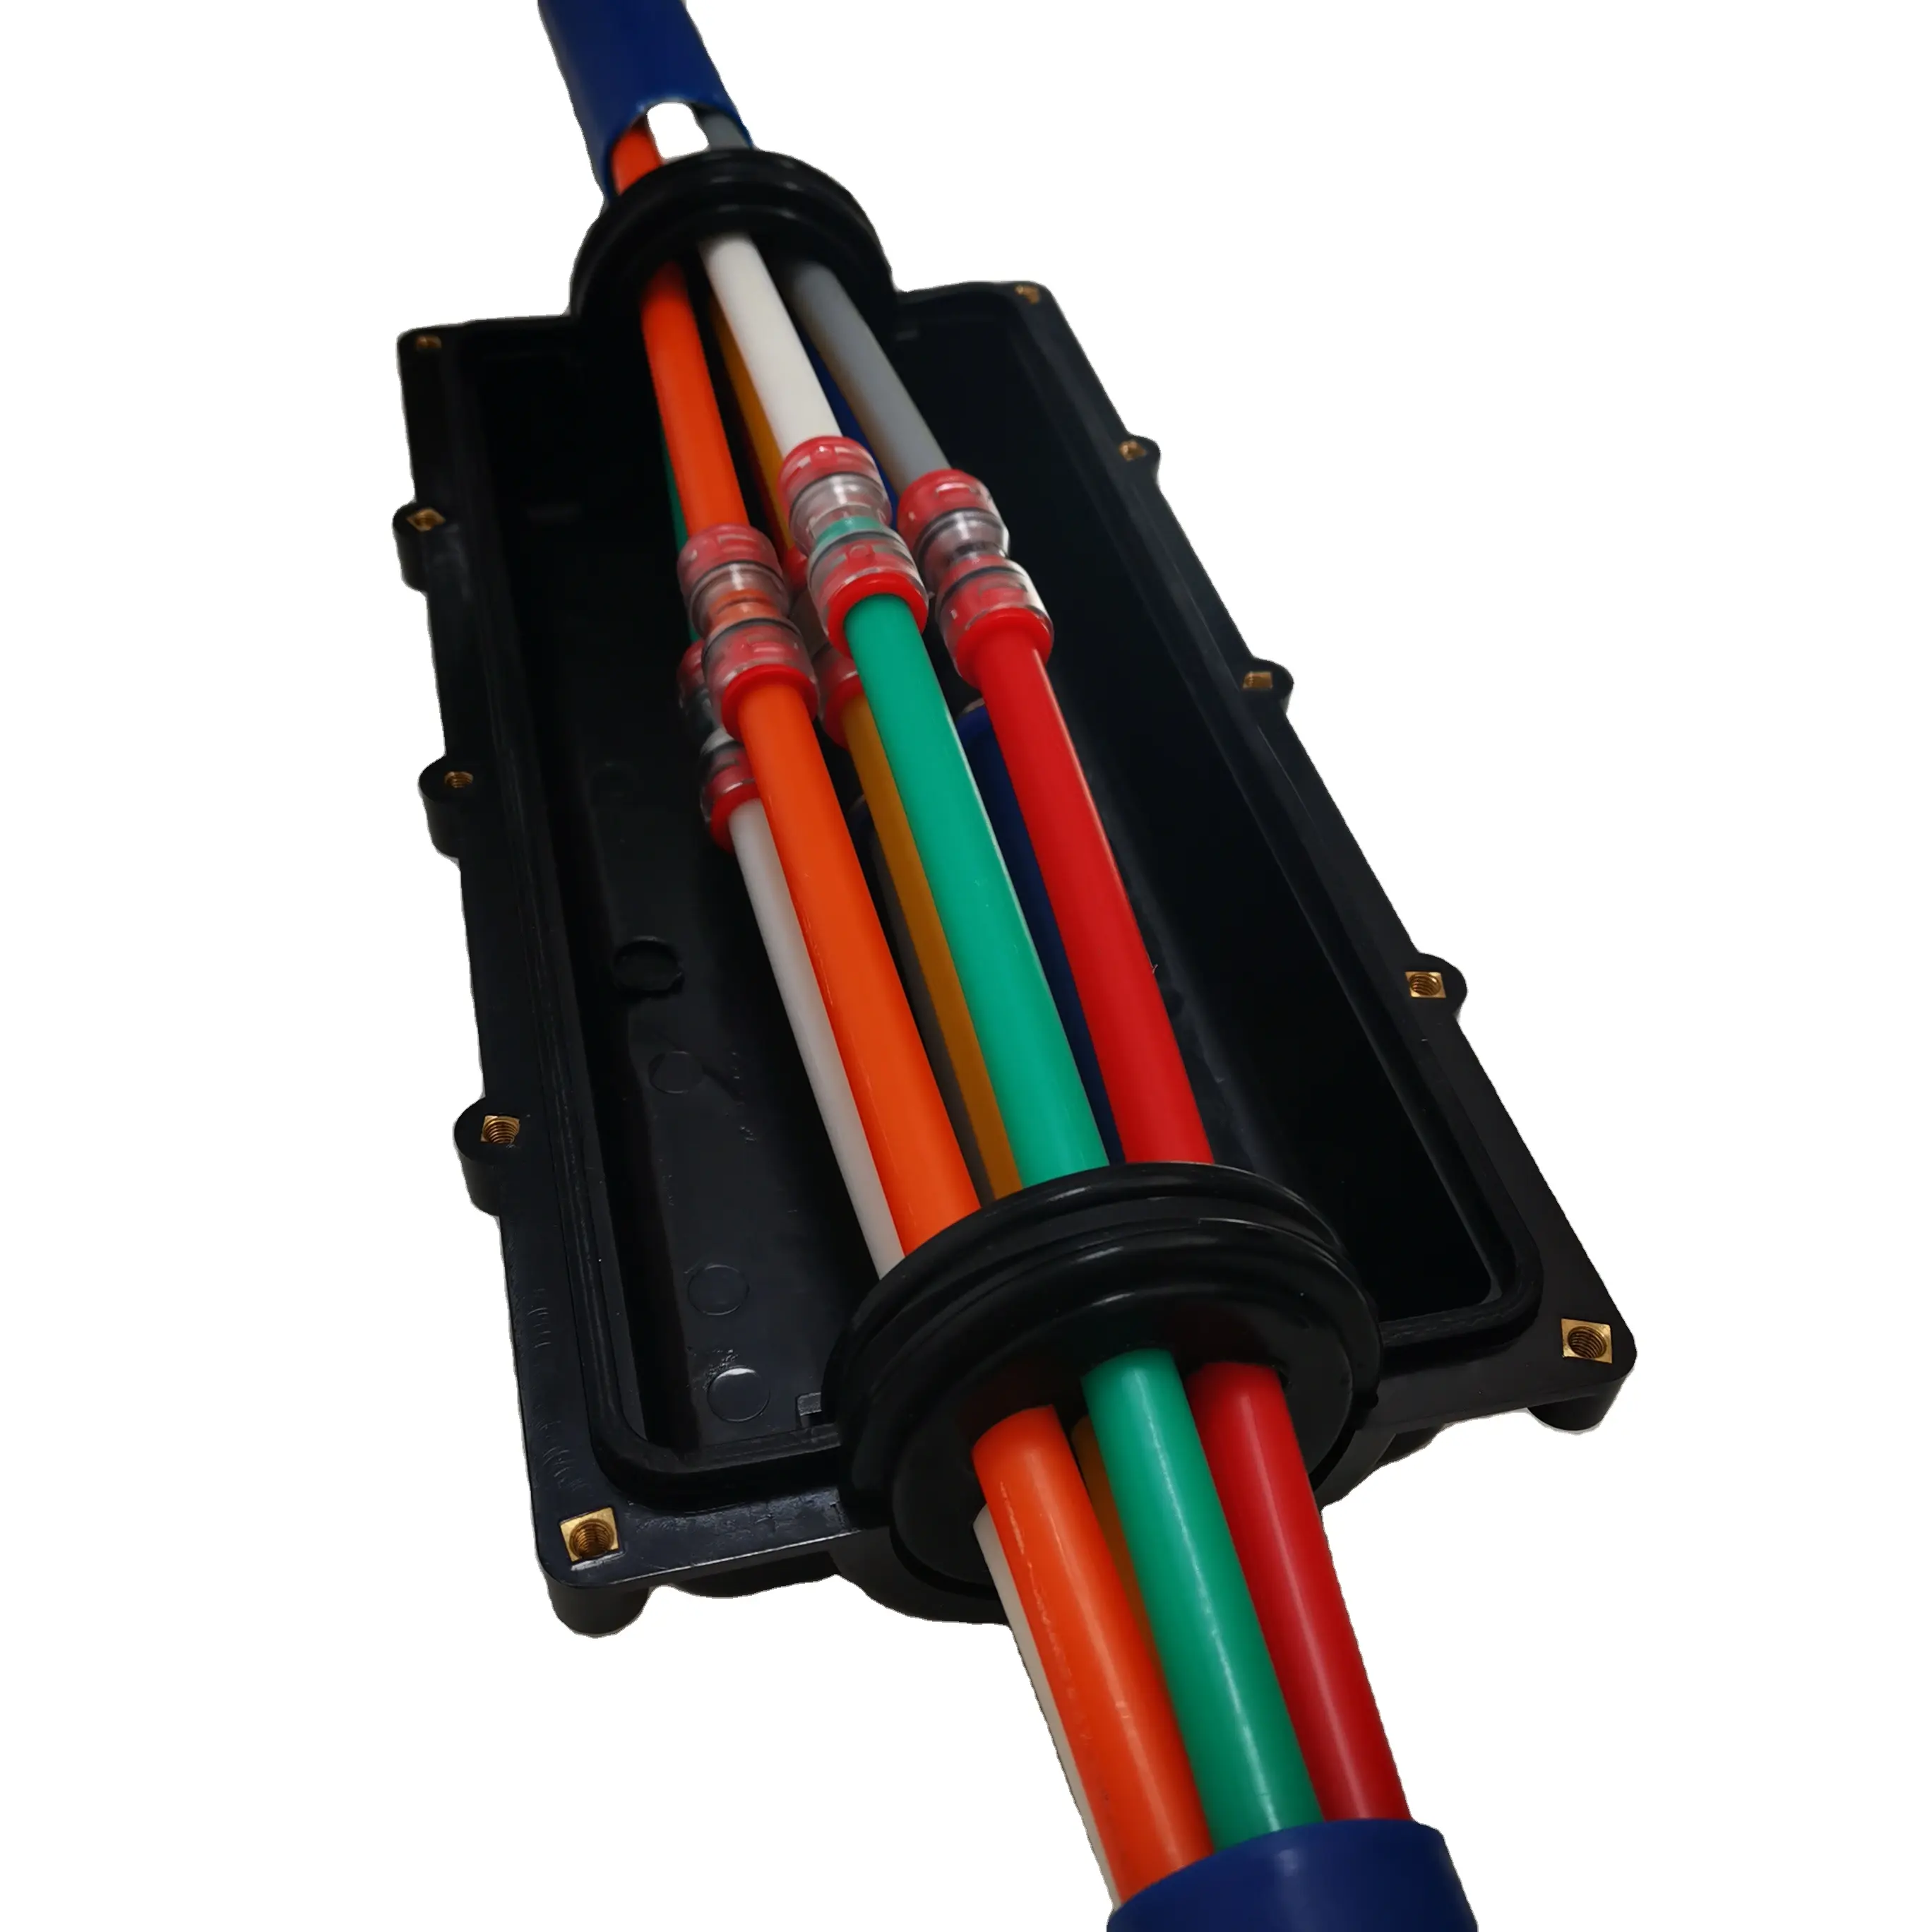 קבורה ישירה מסוג I מוטבע מיקרו צינור TDC חלוקת צינורות סגירת מיקרו צינורות להתקנת כבלים לתעלות טלקום HDPE